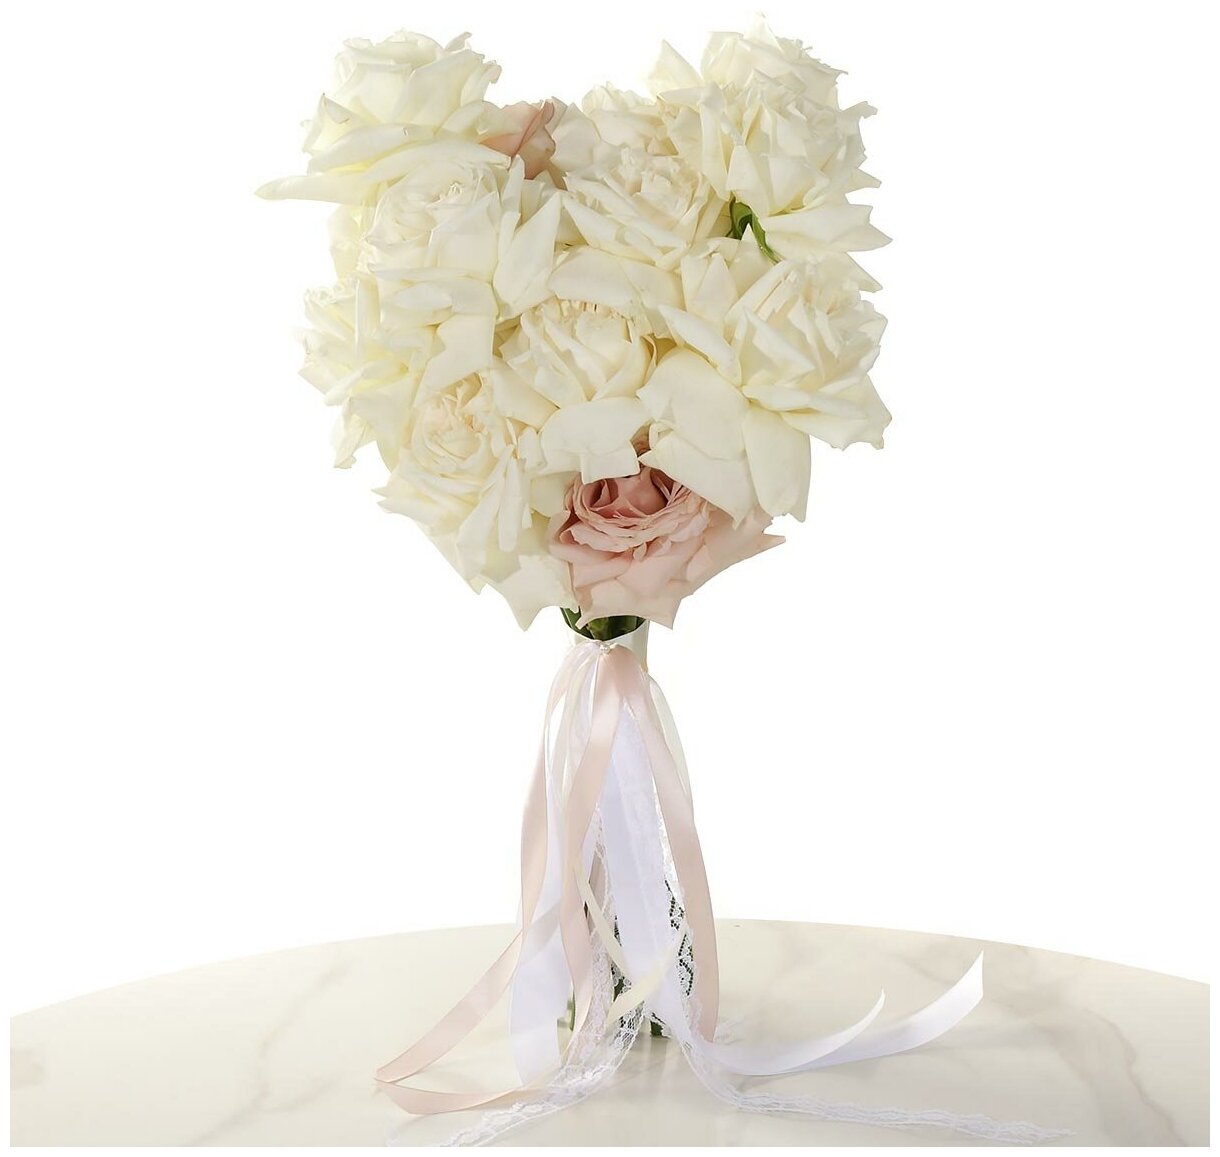 Современный свадебный букет из белых и пудровых роз